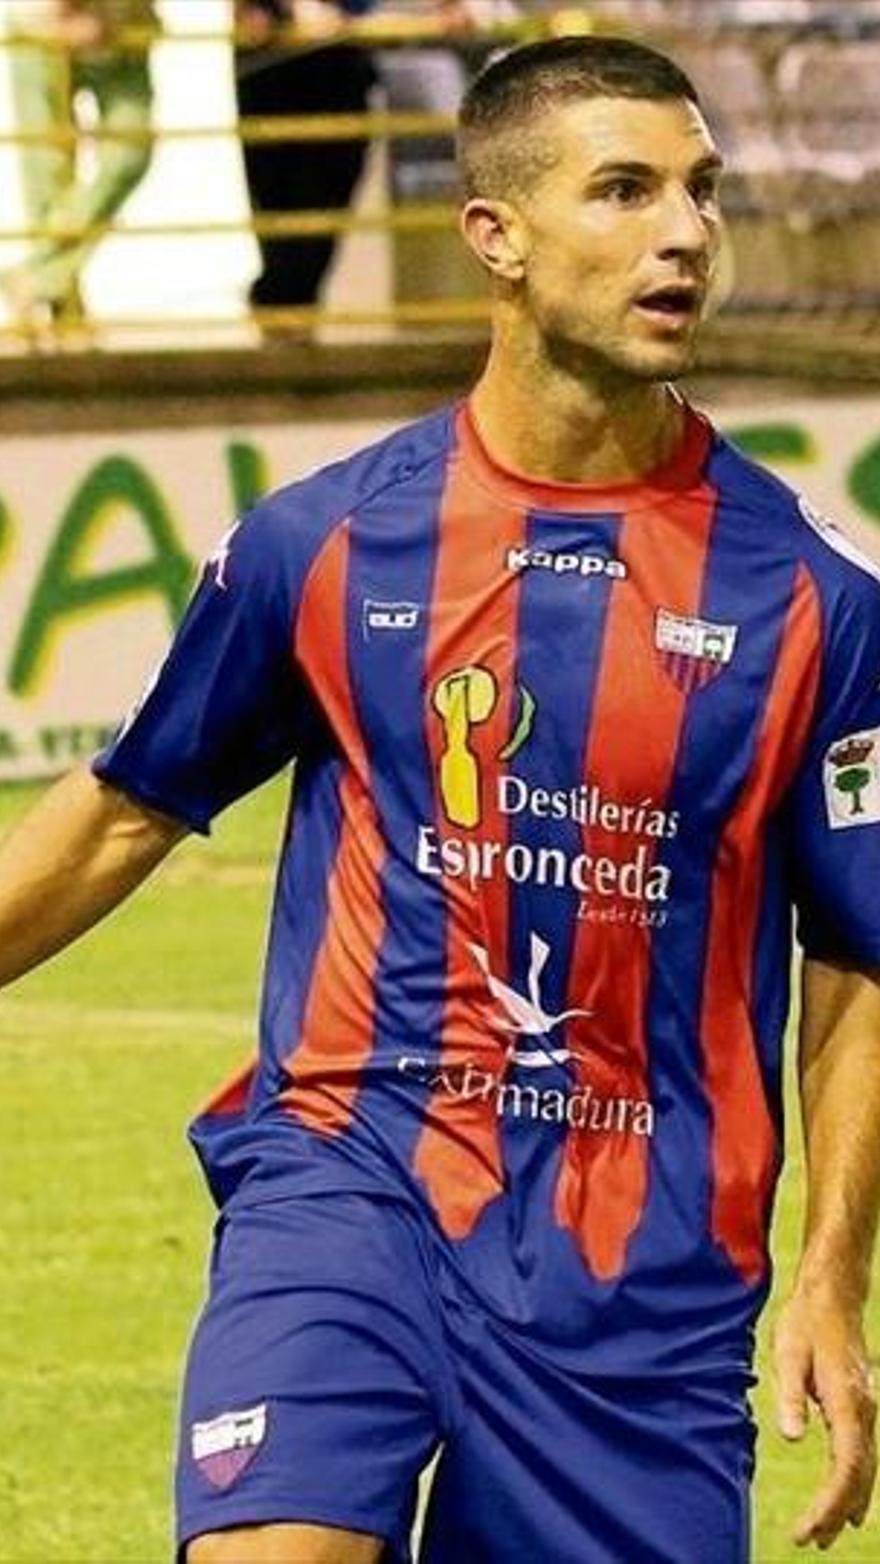 Sube a 15 nómina de jugadores extremeños el 'LFP' - El Periódico Extremadura